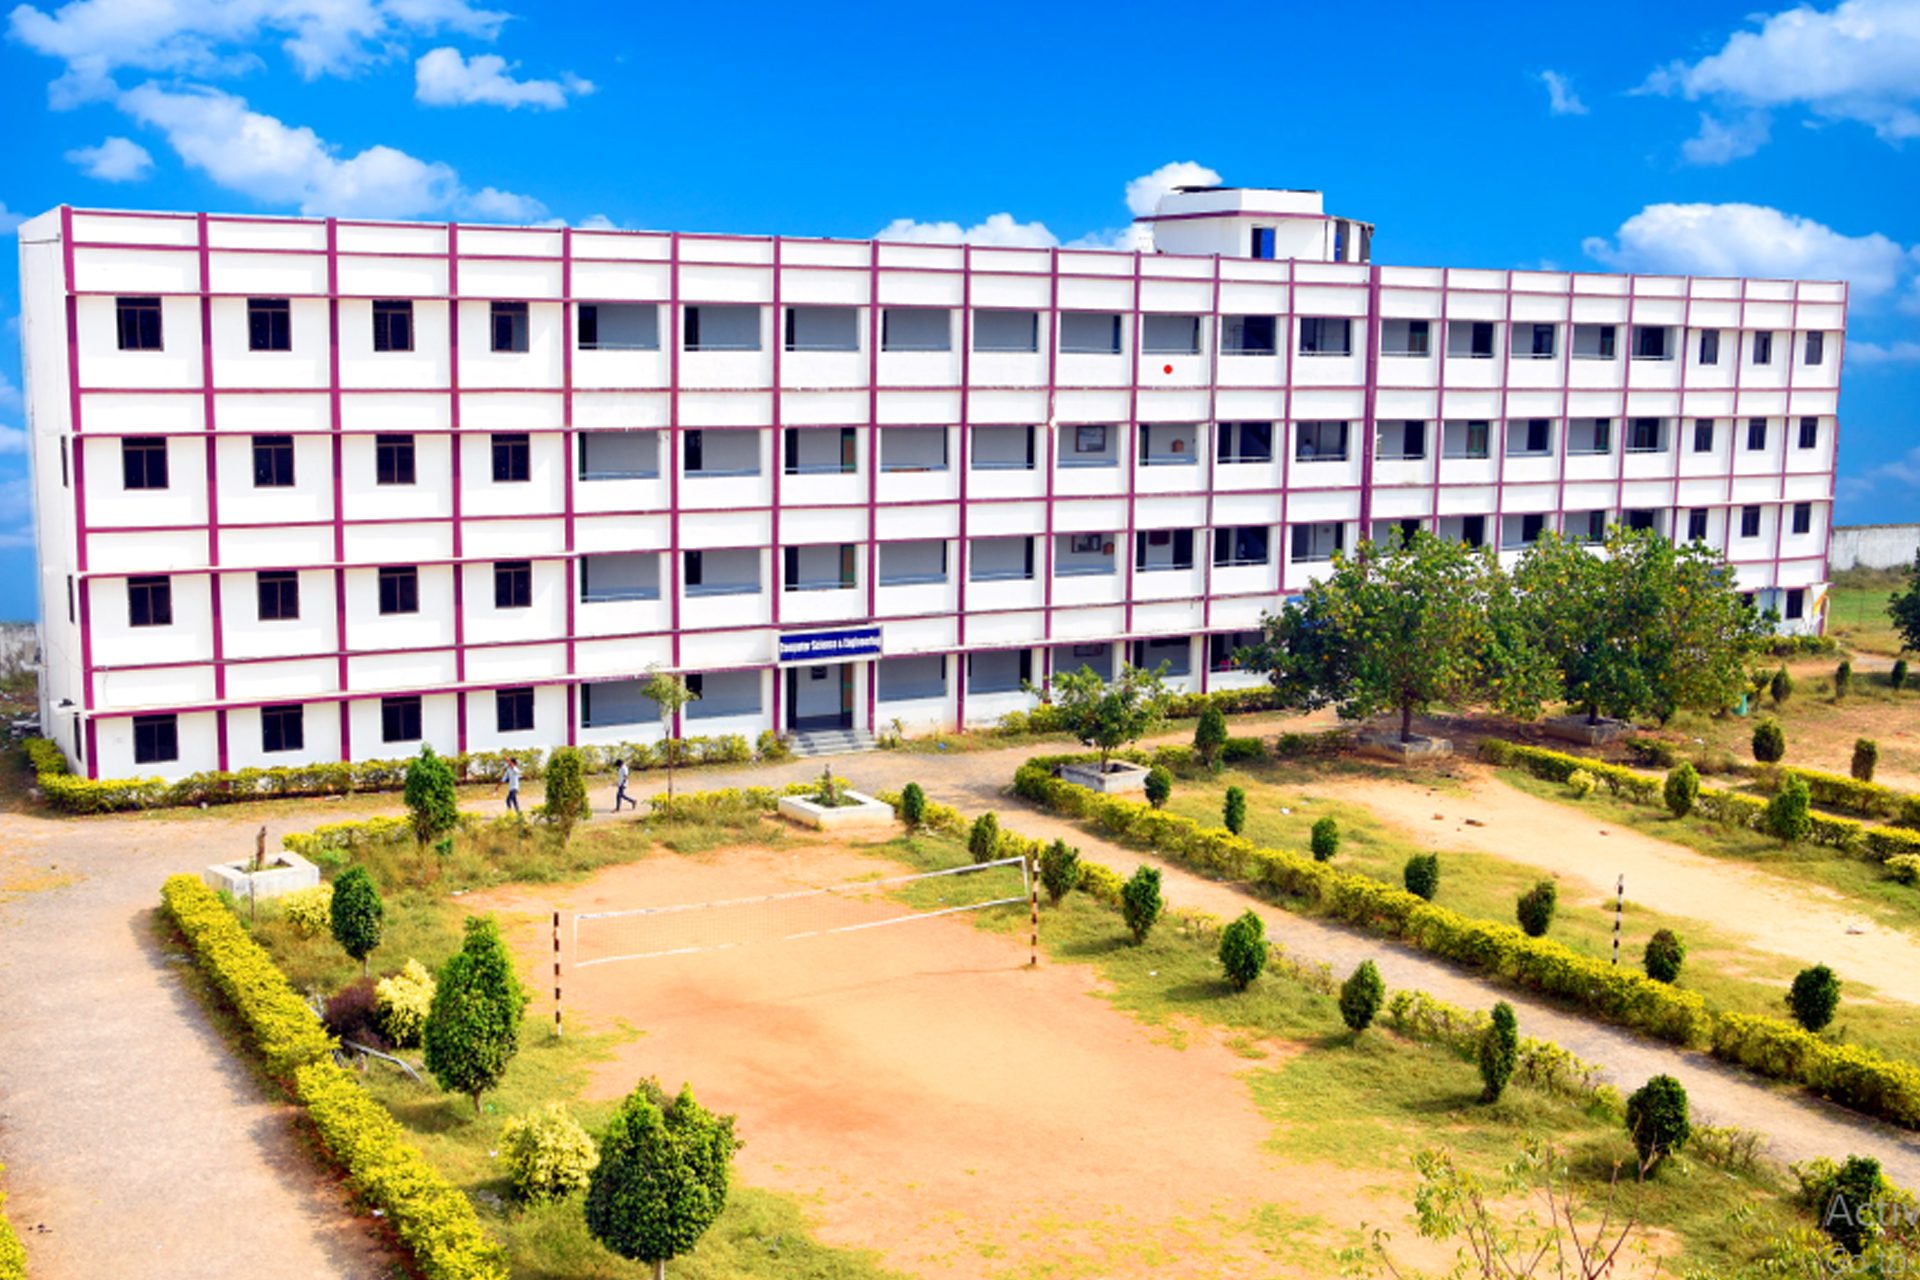 Guntur Engineering College